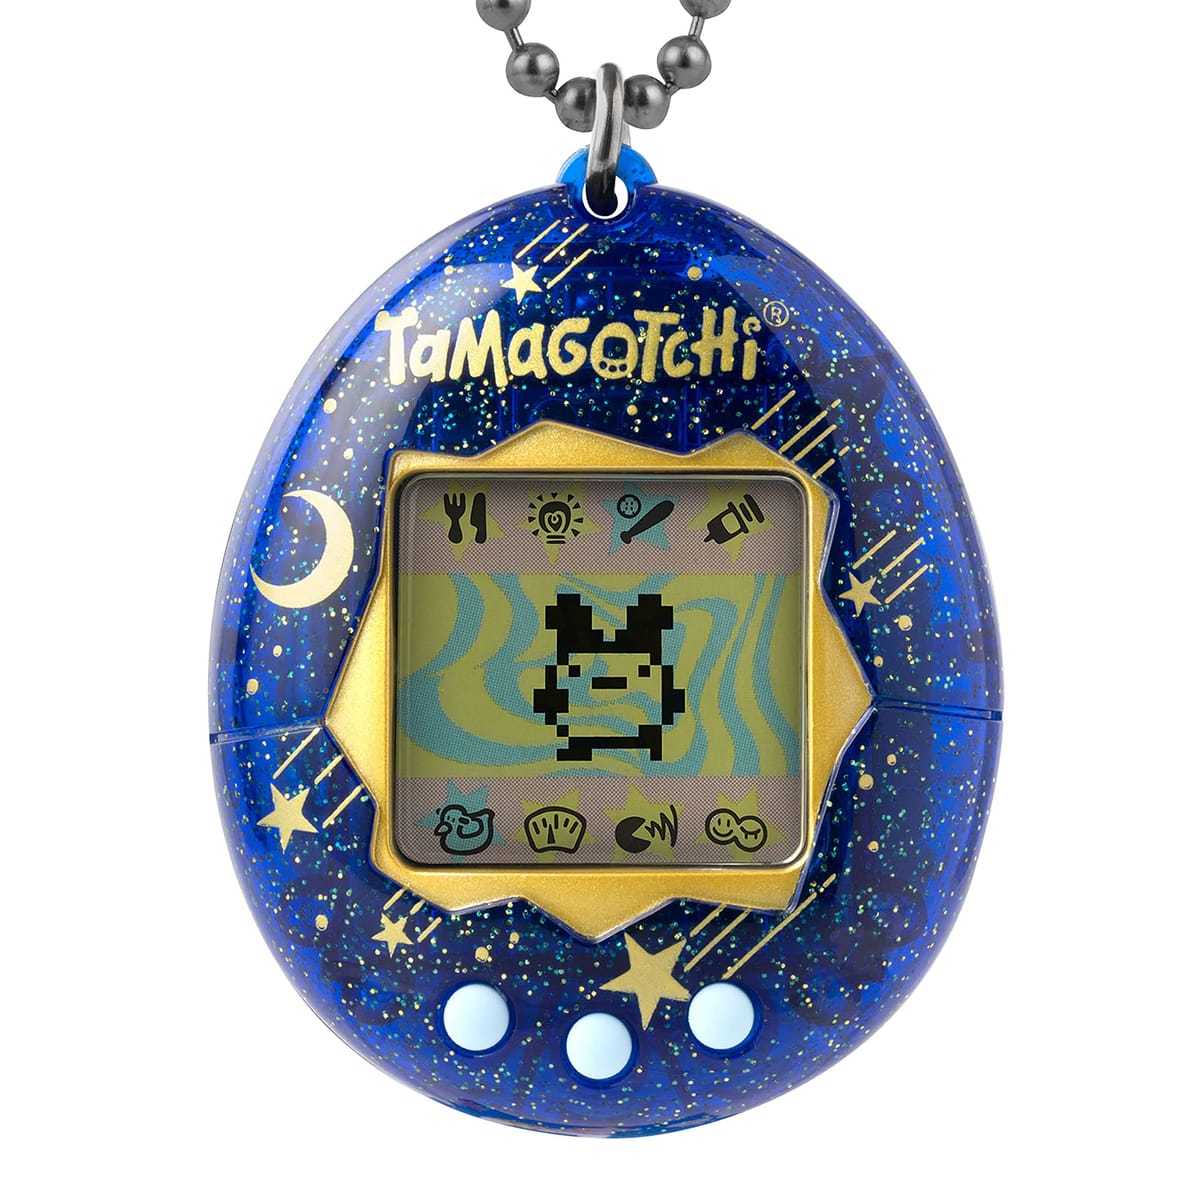 Tamagotchi Original (たまごっちオリジナル) 電子ゲーム - 星のシャワー [日本語ではない場合があります]